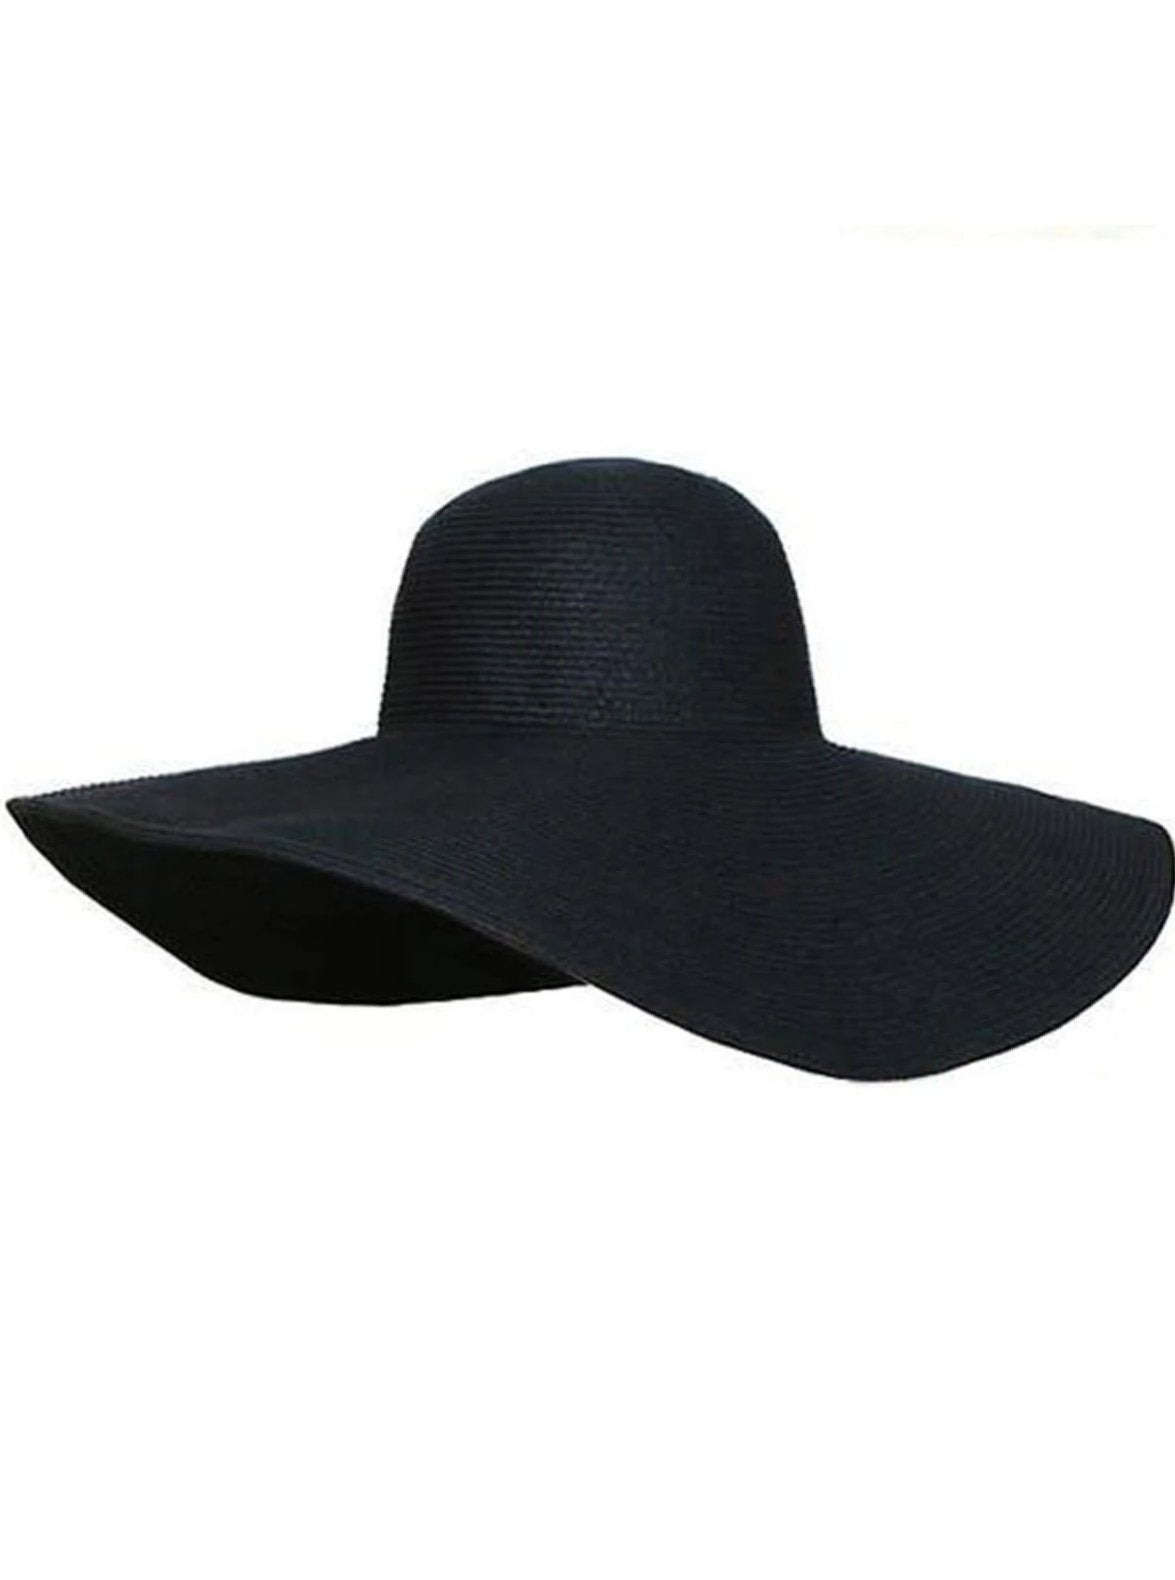 Womens Summer Wide Brim Oversized Straw Hat - Black - Womens Accessories